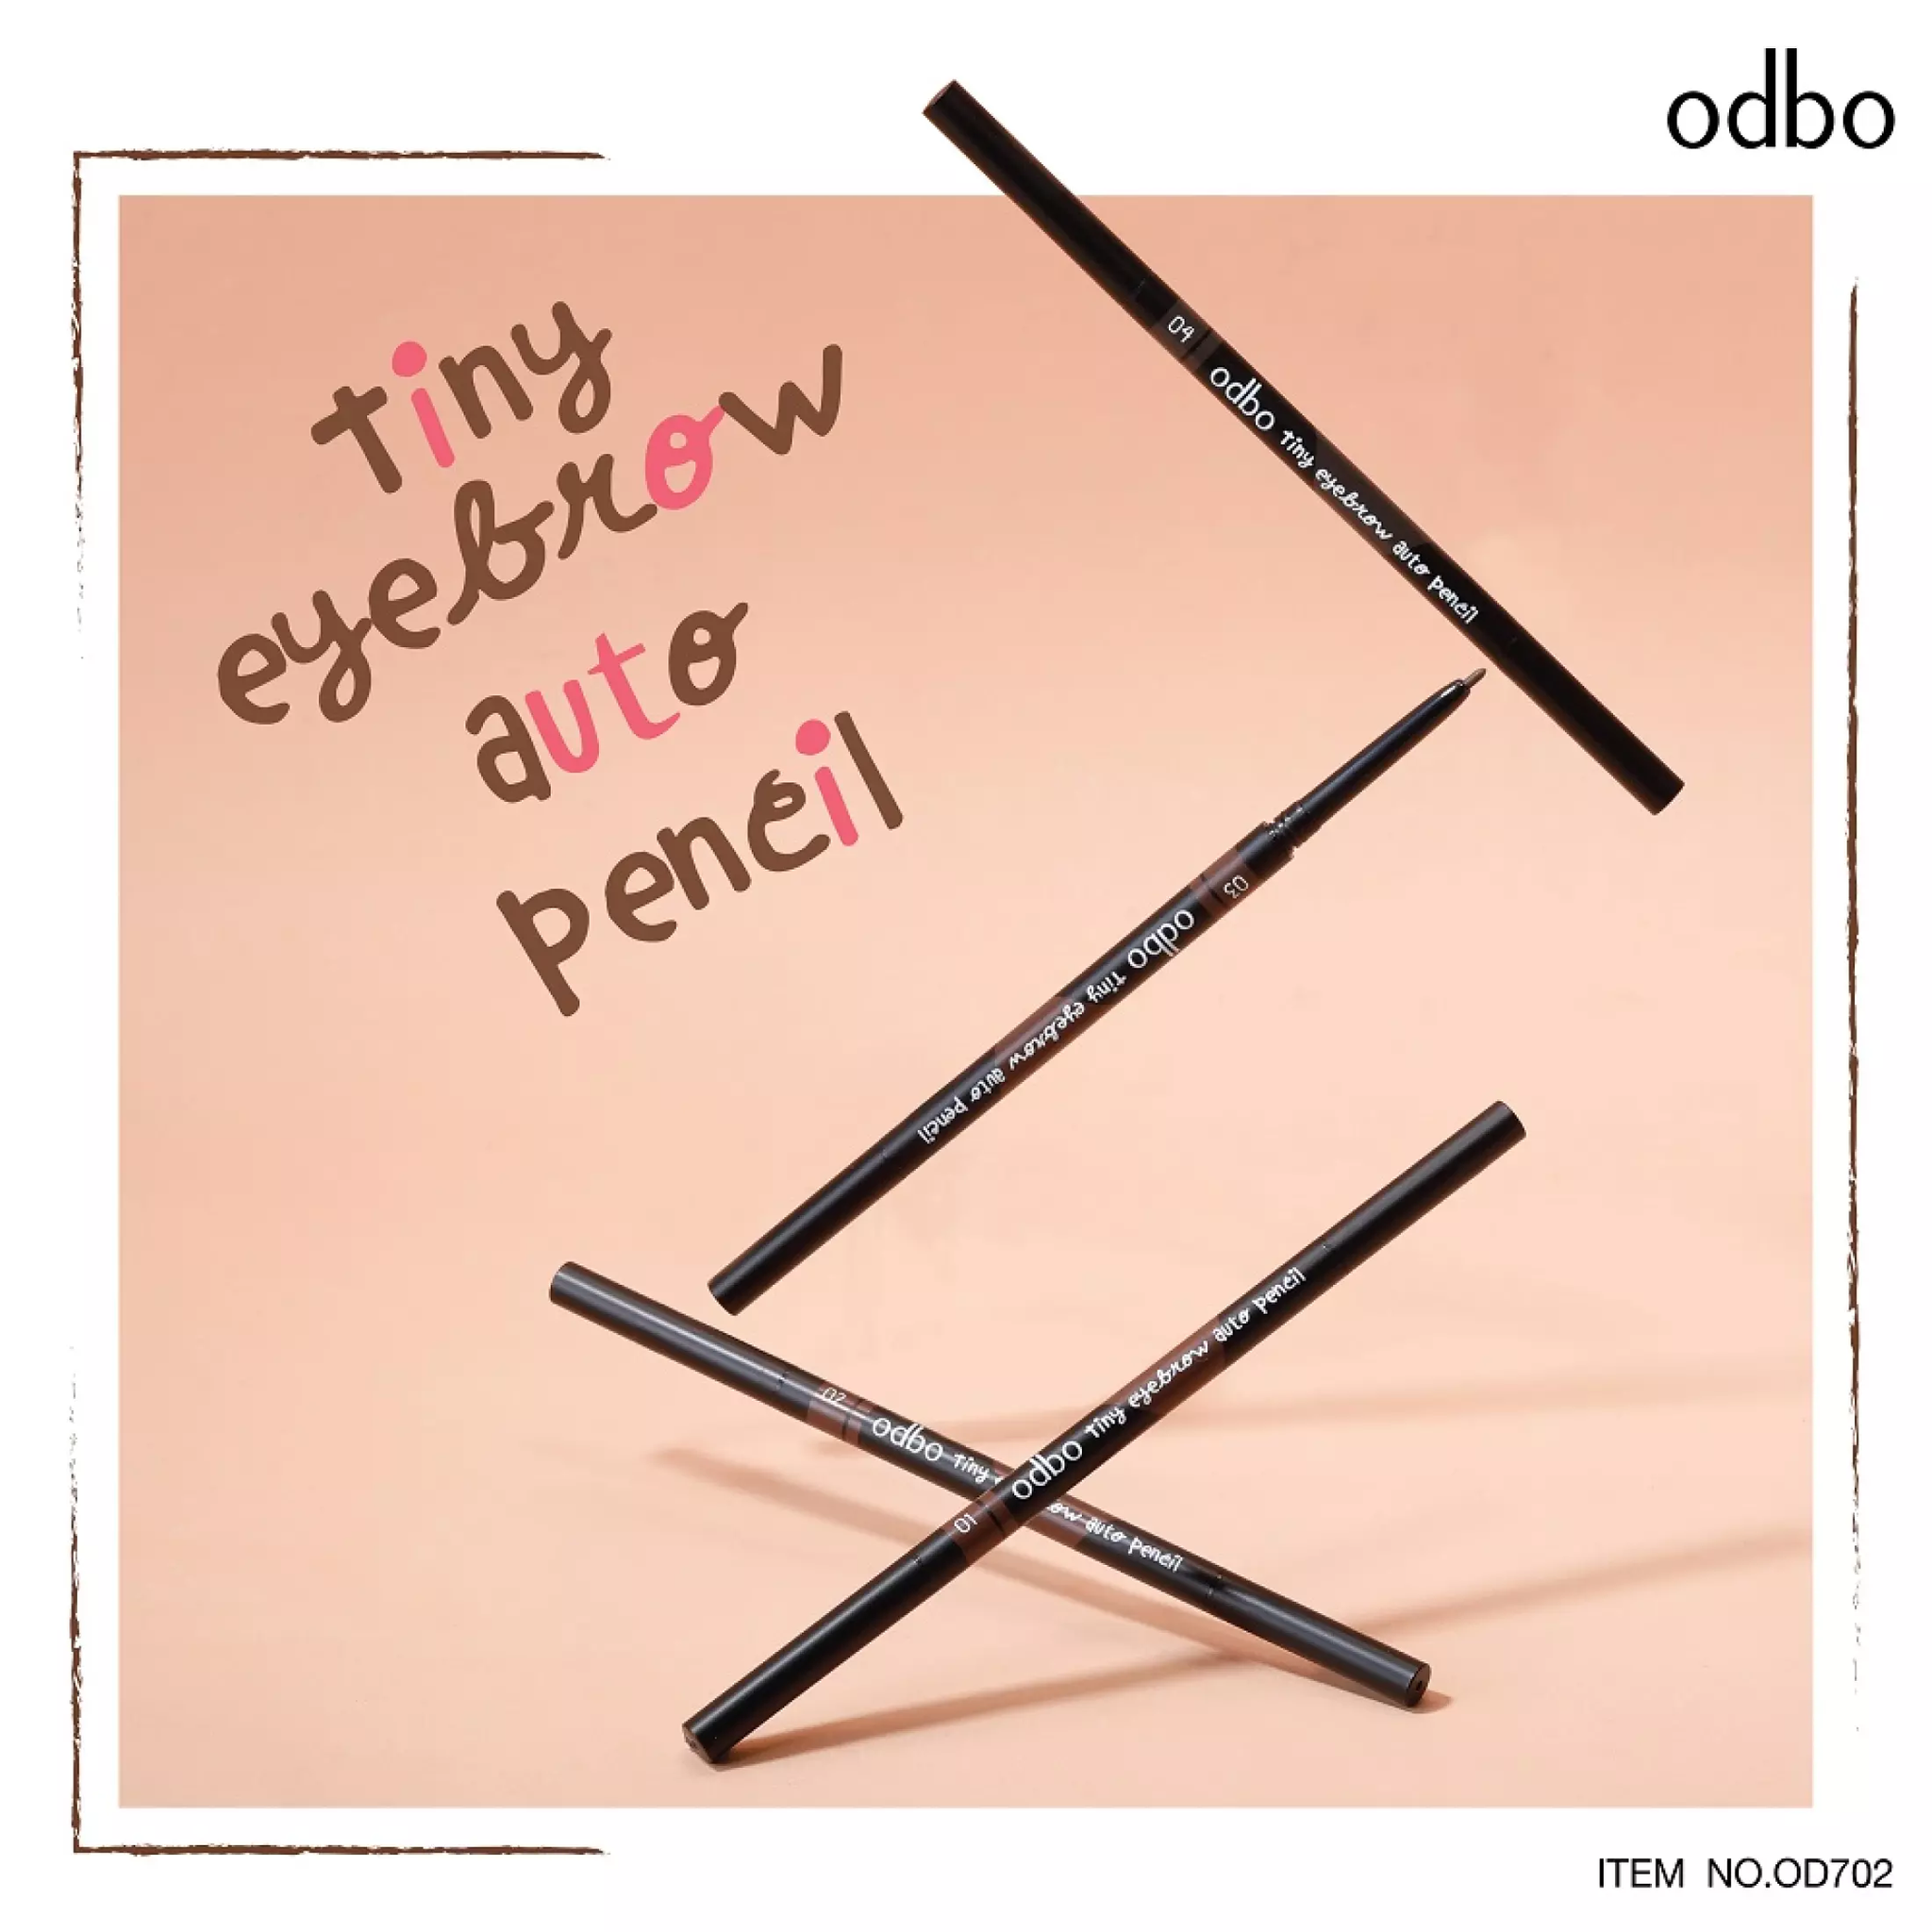 Odbo Tiny Eyebrow Auto Pencil #OD702 : โอดีบีโอ ไทนี่ อายบราว ออโต้ เพ็นซิล ดินสอเขียนคิ้ว